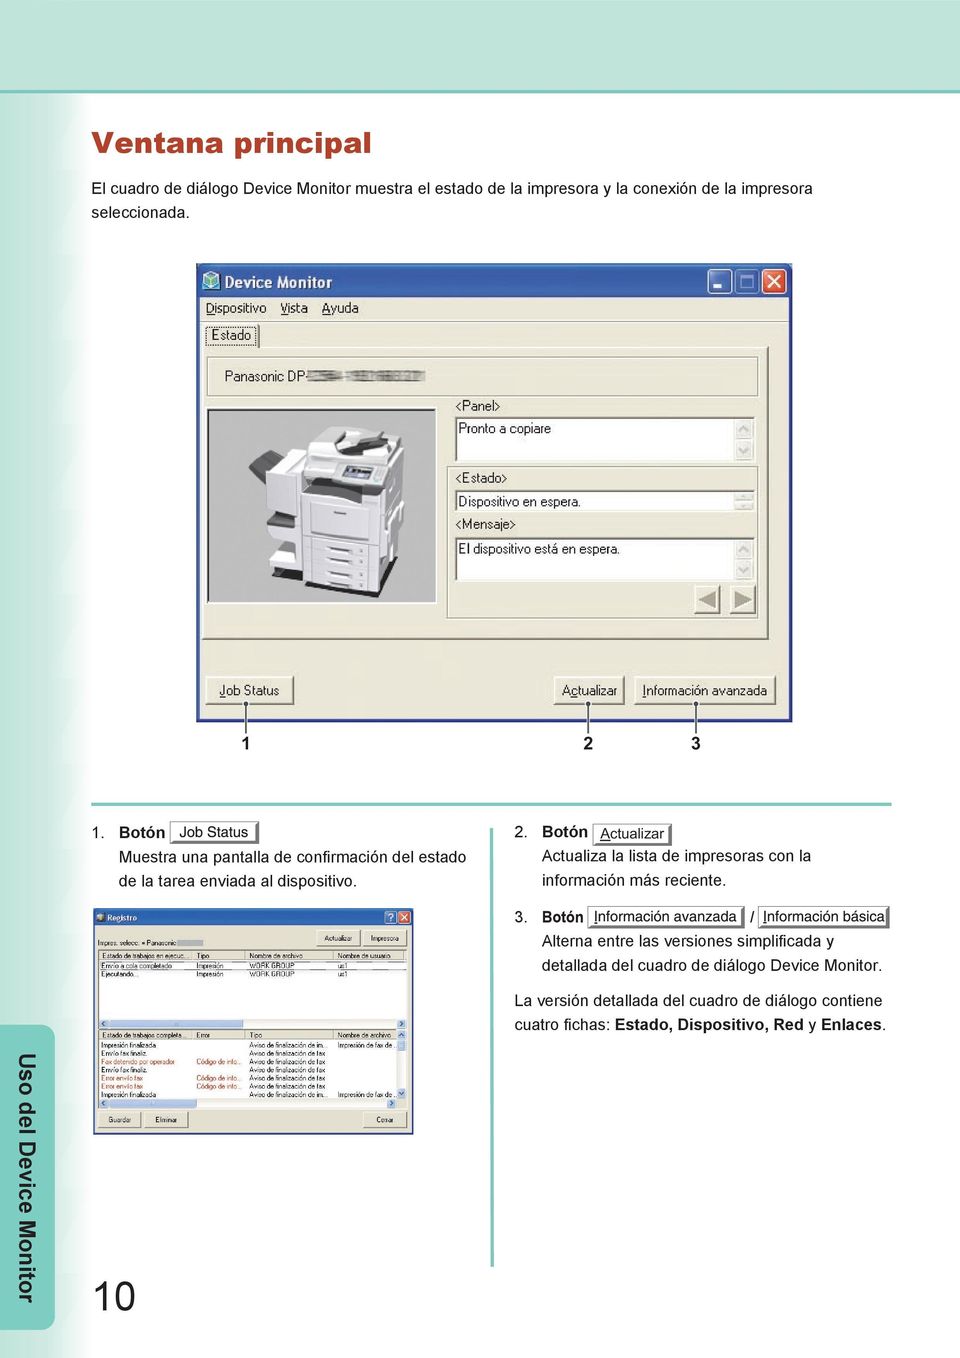 3. Botón / Alterna entre las versiones simplificada y detallada del cuadro de diálogo Device Monitor.